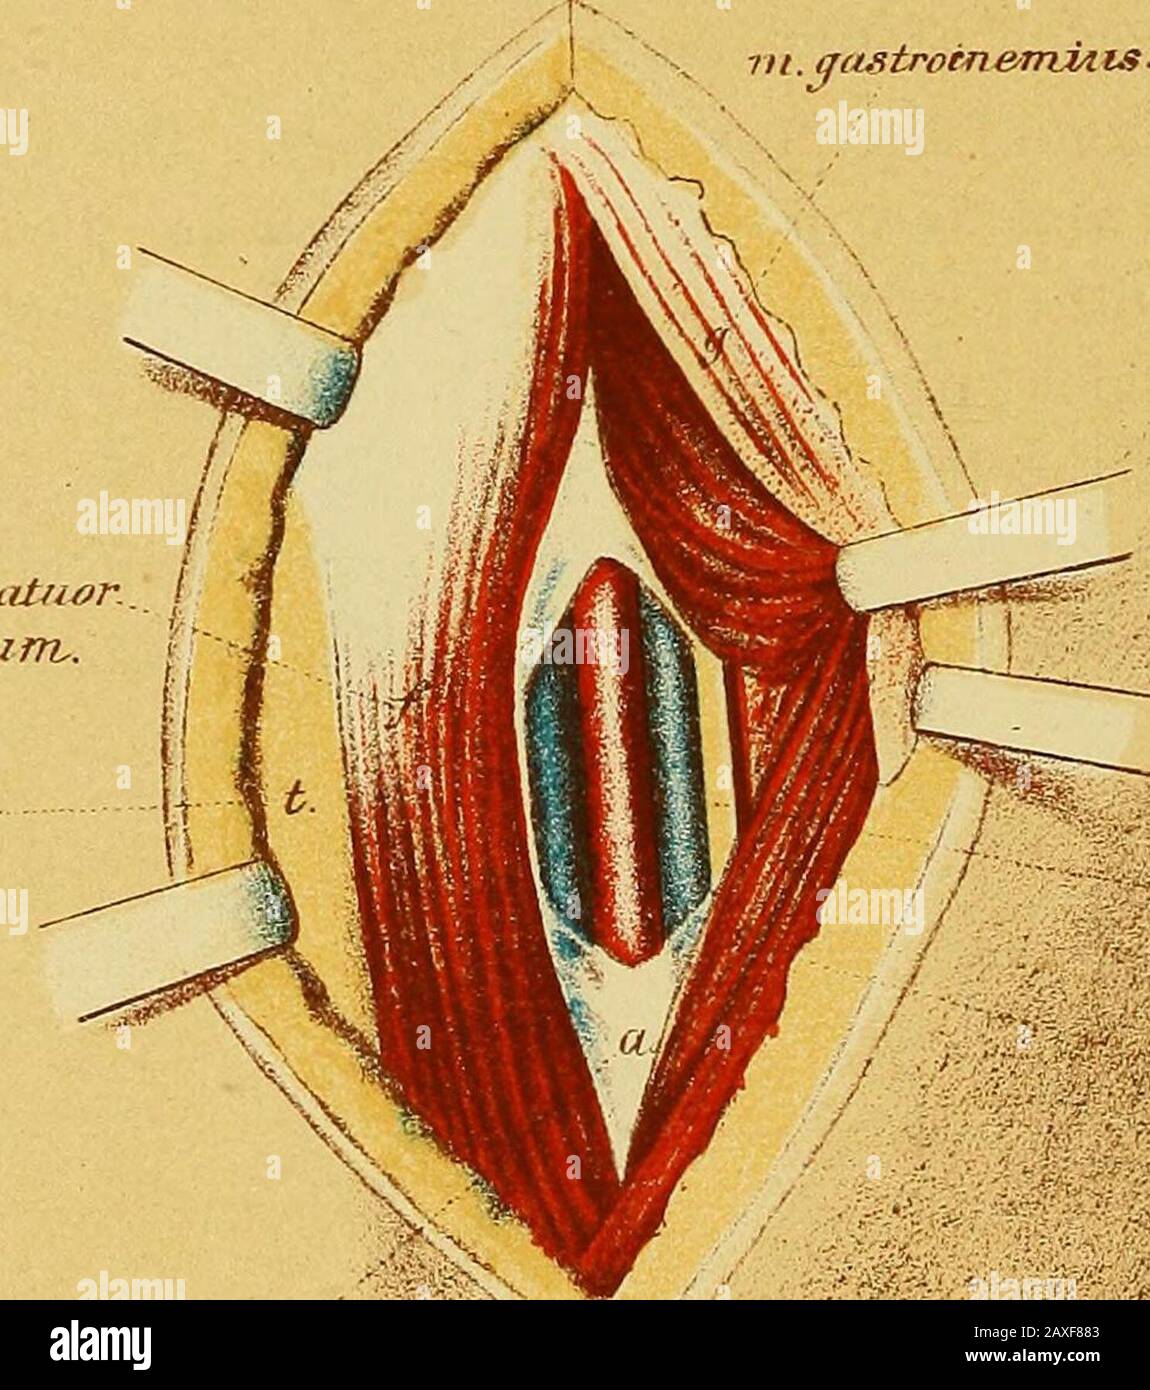 Il manuale del chirurgo sul trattamento dei feriti in guerra : un saggio premio . 4£&7Zgor hcJx^b^riffv^ Tcib.IK m m.flexor jfiiatuar..  i dieritorunv. % tii. (Justroin&miAis. RH/ia. T- f Tterous tibialis. Twsoleus. AjLO-nearosi. M Piastra XX.Ligature dell'arteria tibiale posteriore sopra il centro della gamba (destra). 1. L'incisione cutanea ha una lunghezza di 8 - 10cm e ad una distanzadi lcm dal bordo interno della tibia. 2. Dopo la divisione della fascia, il bordo della gastrocnemiusè tirato indietro, e i soleni separati dalla tibia: L'apertura è allargata con la punta del dito, Foto Stock